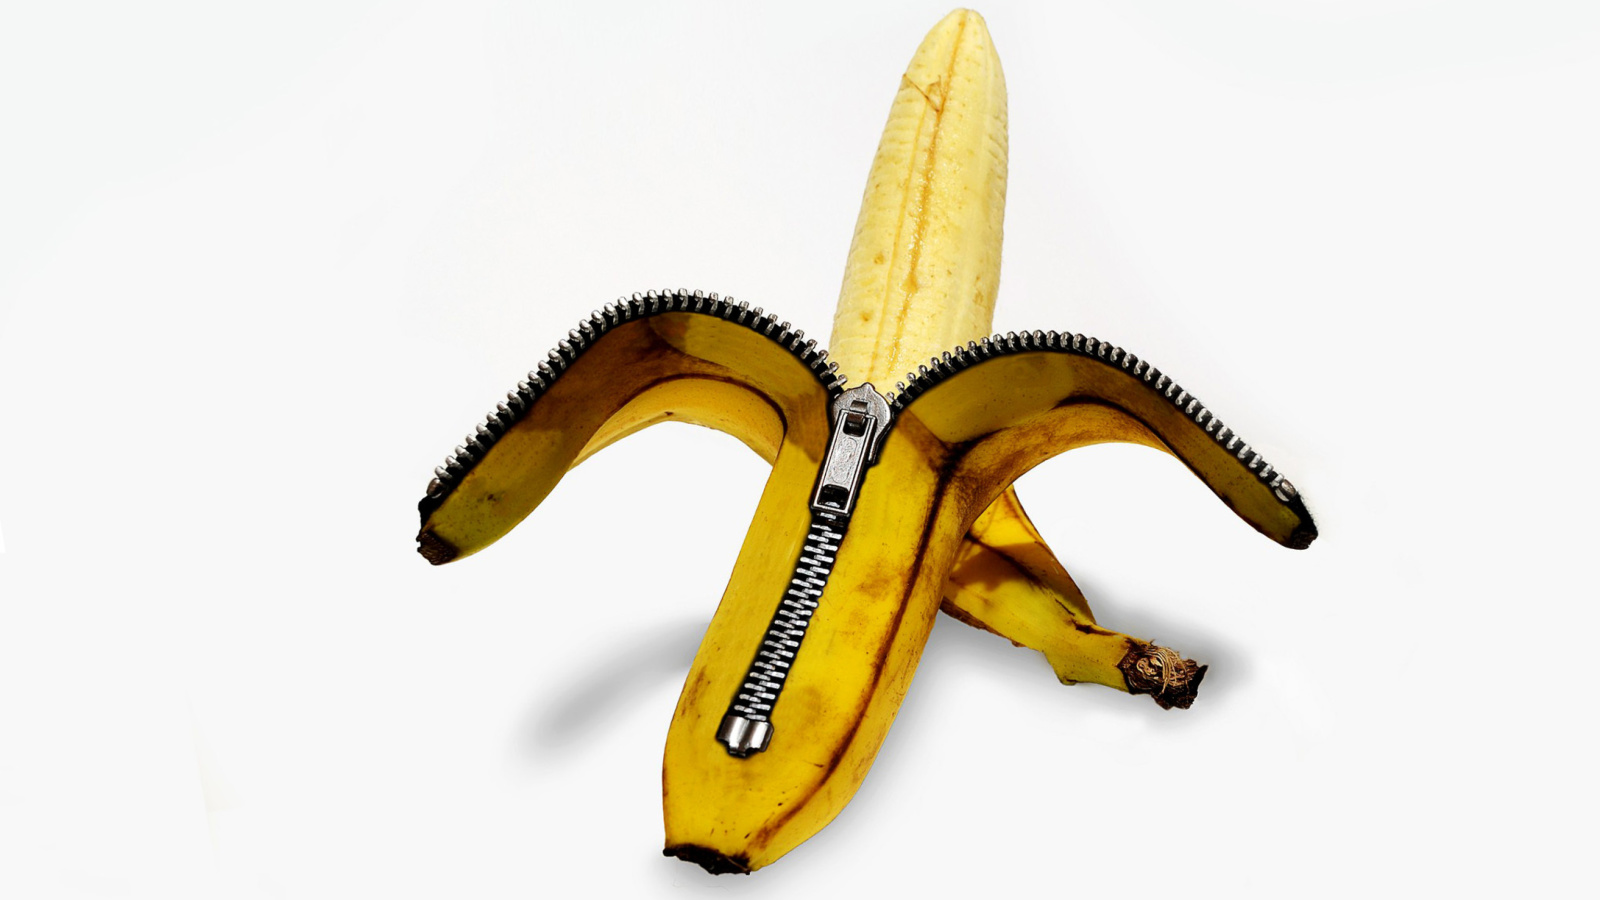 Funny banana as zipper screenshot #1 1600x900